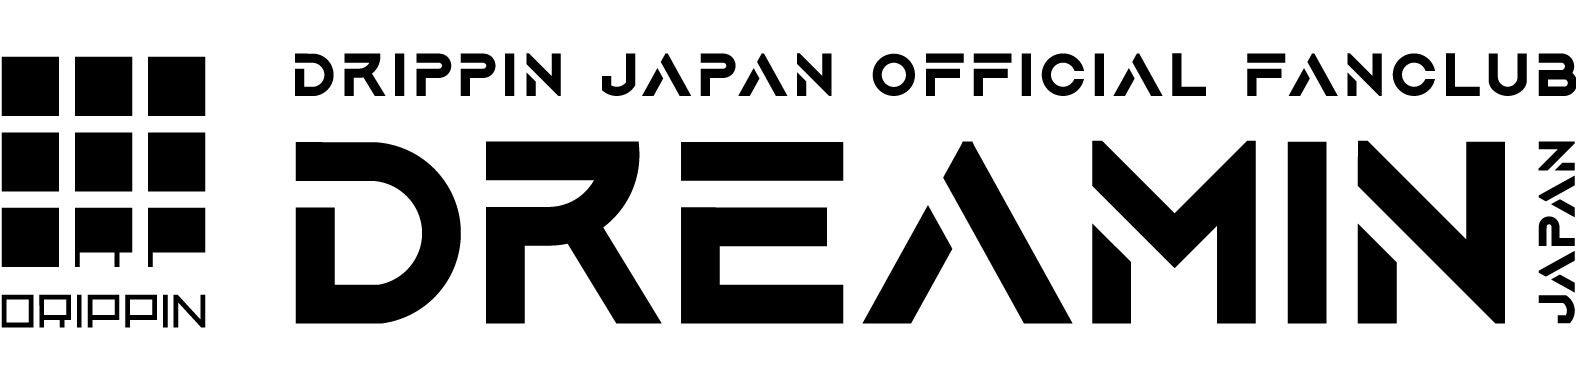 fanclub logo